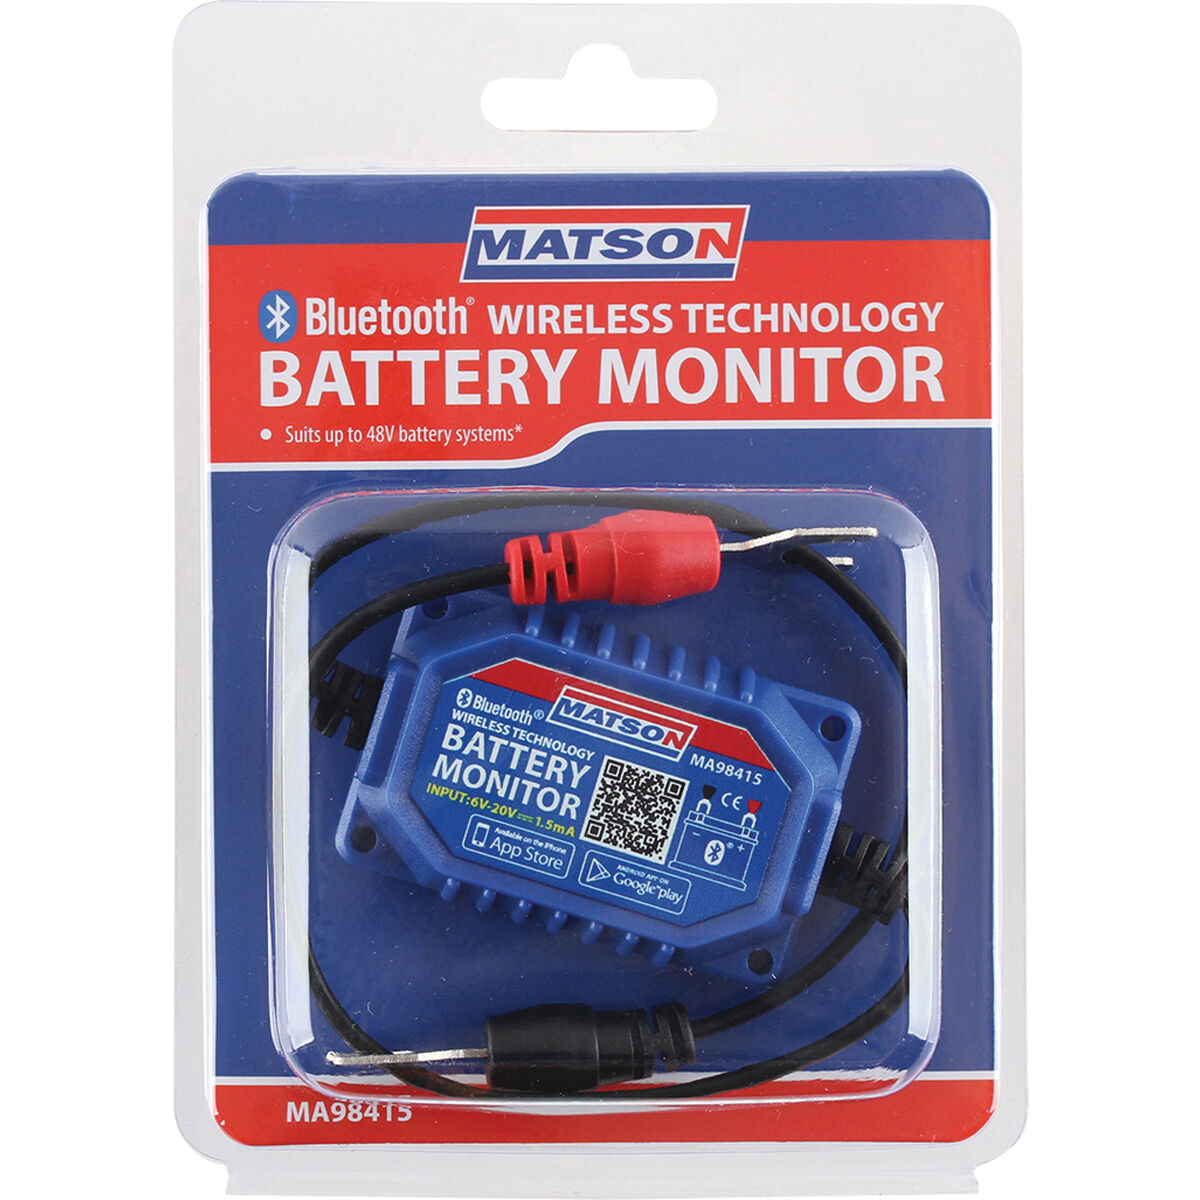 matson bluetooth wireless battery monitor